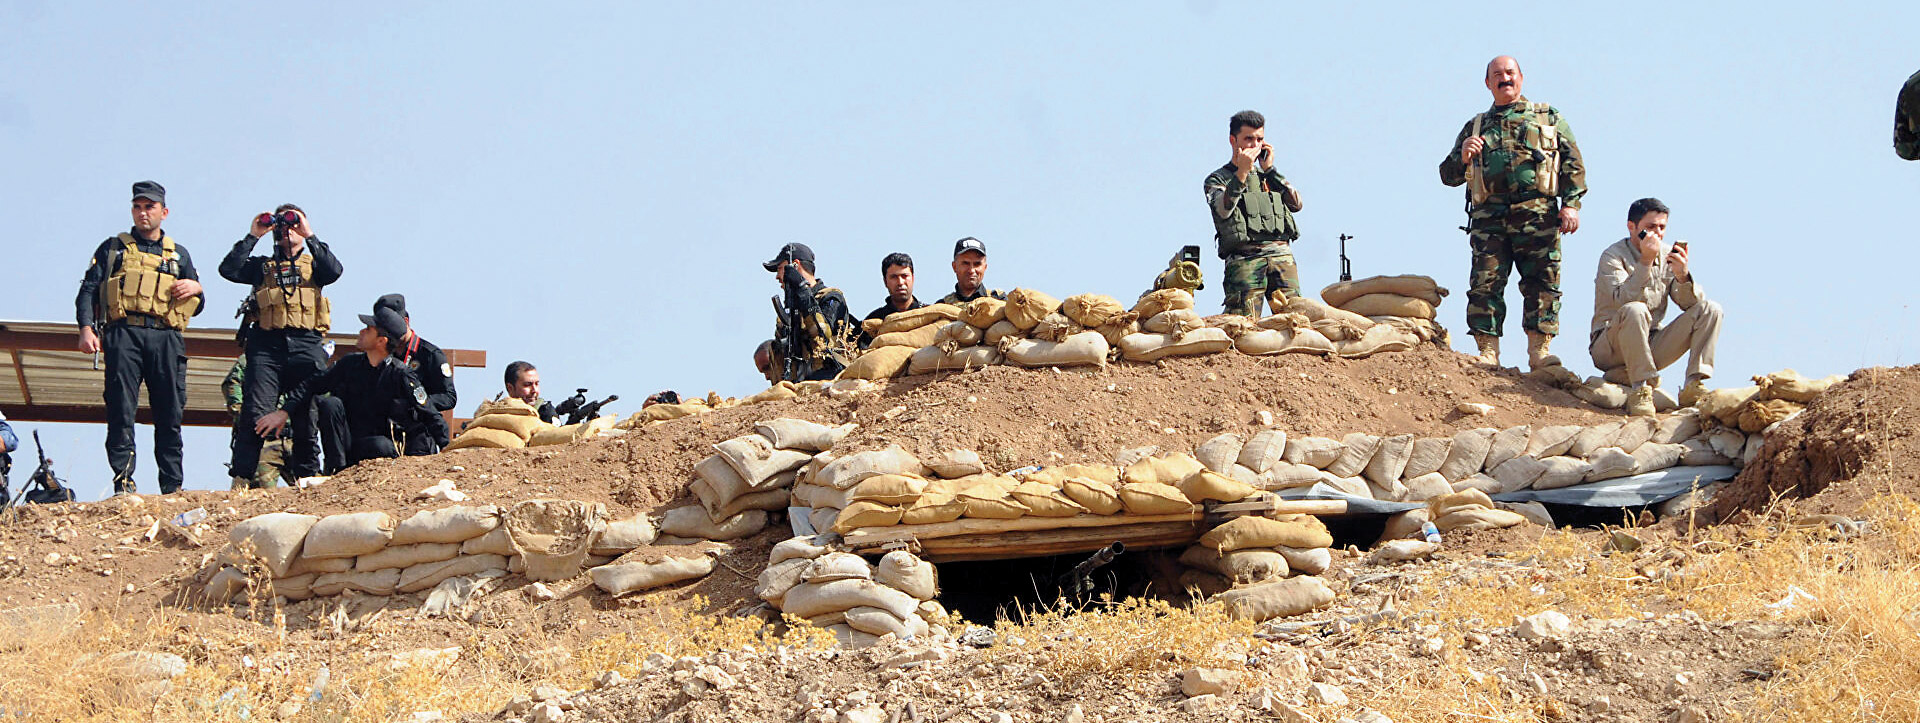 داعش در مسیر بازگشت به عراق